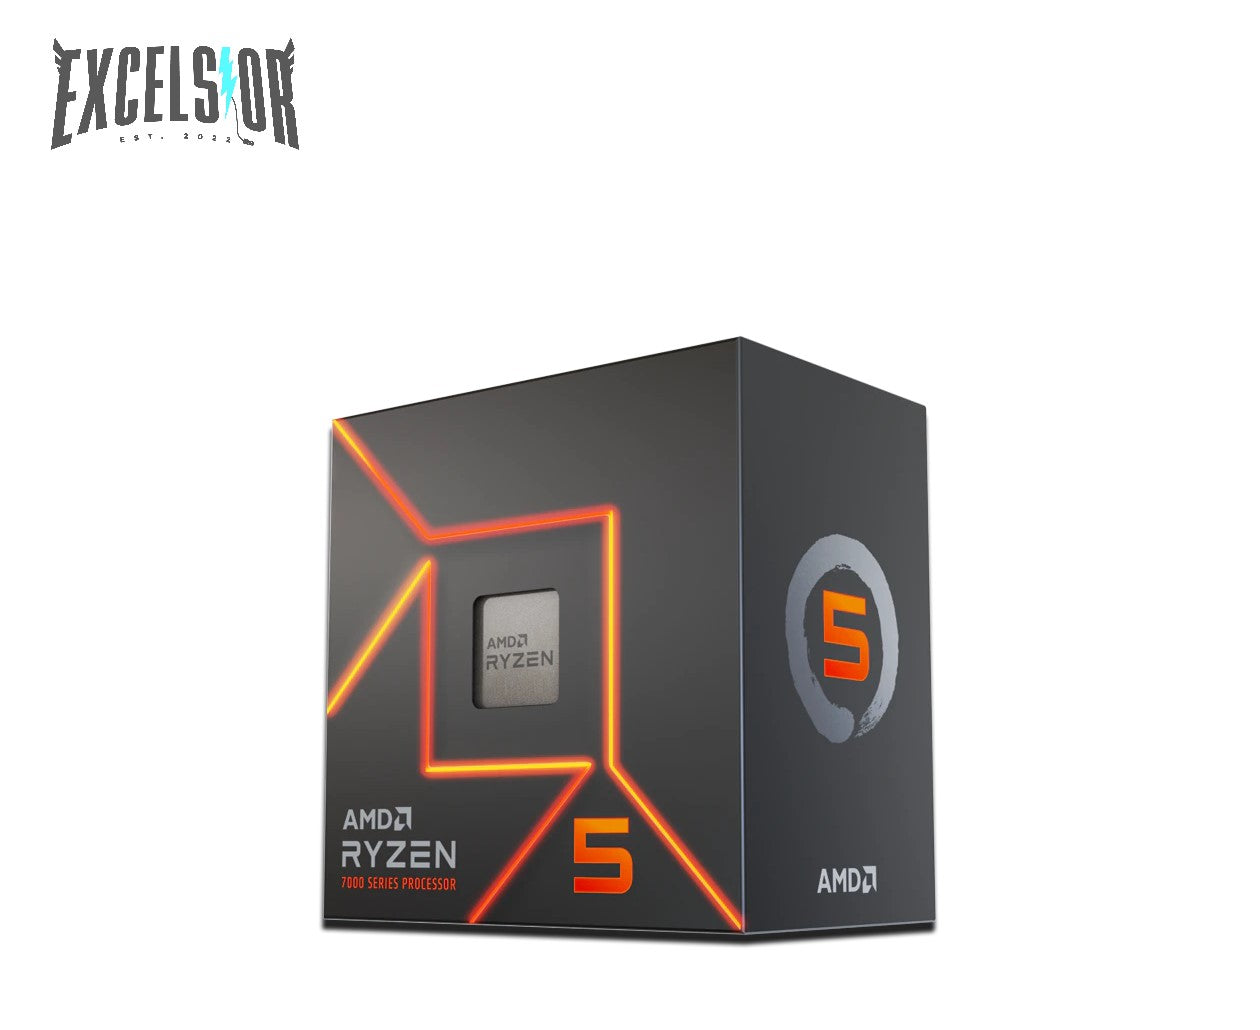 AMD Ryzen 5 7600